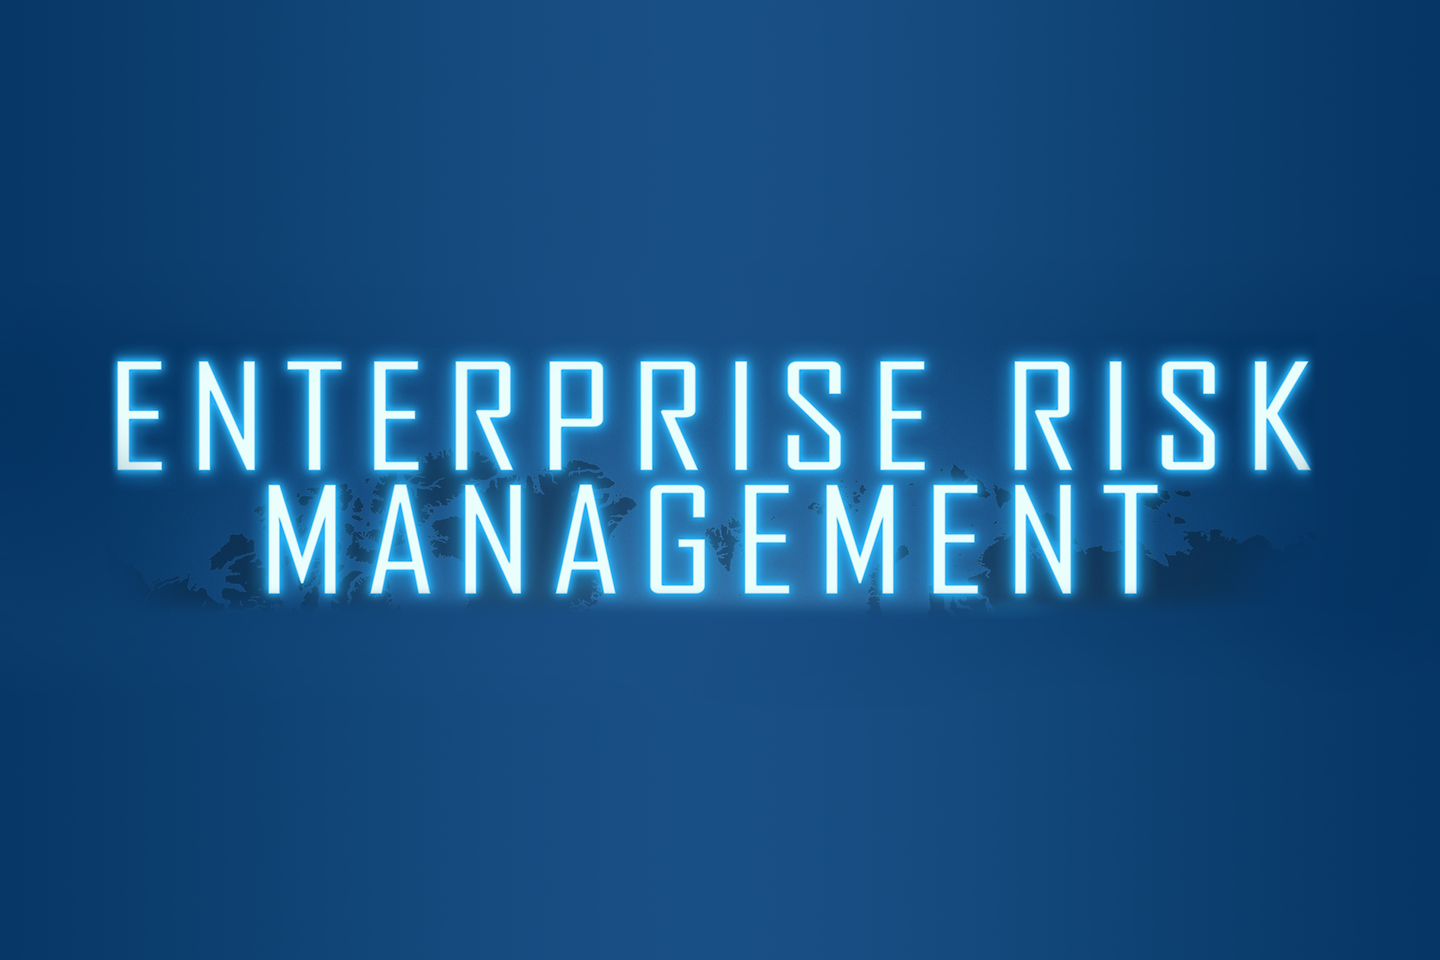 Der Schriftzug Enterprise Risk Management vor einem blauen Hintergrund mit einer Weltkarte.